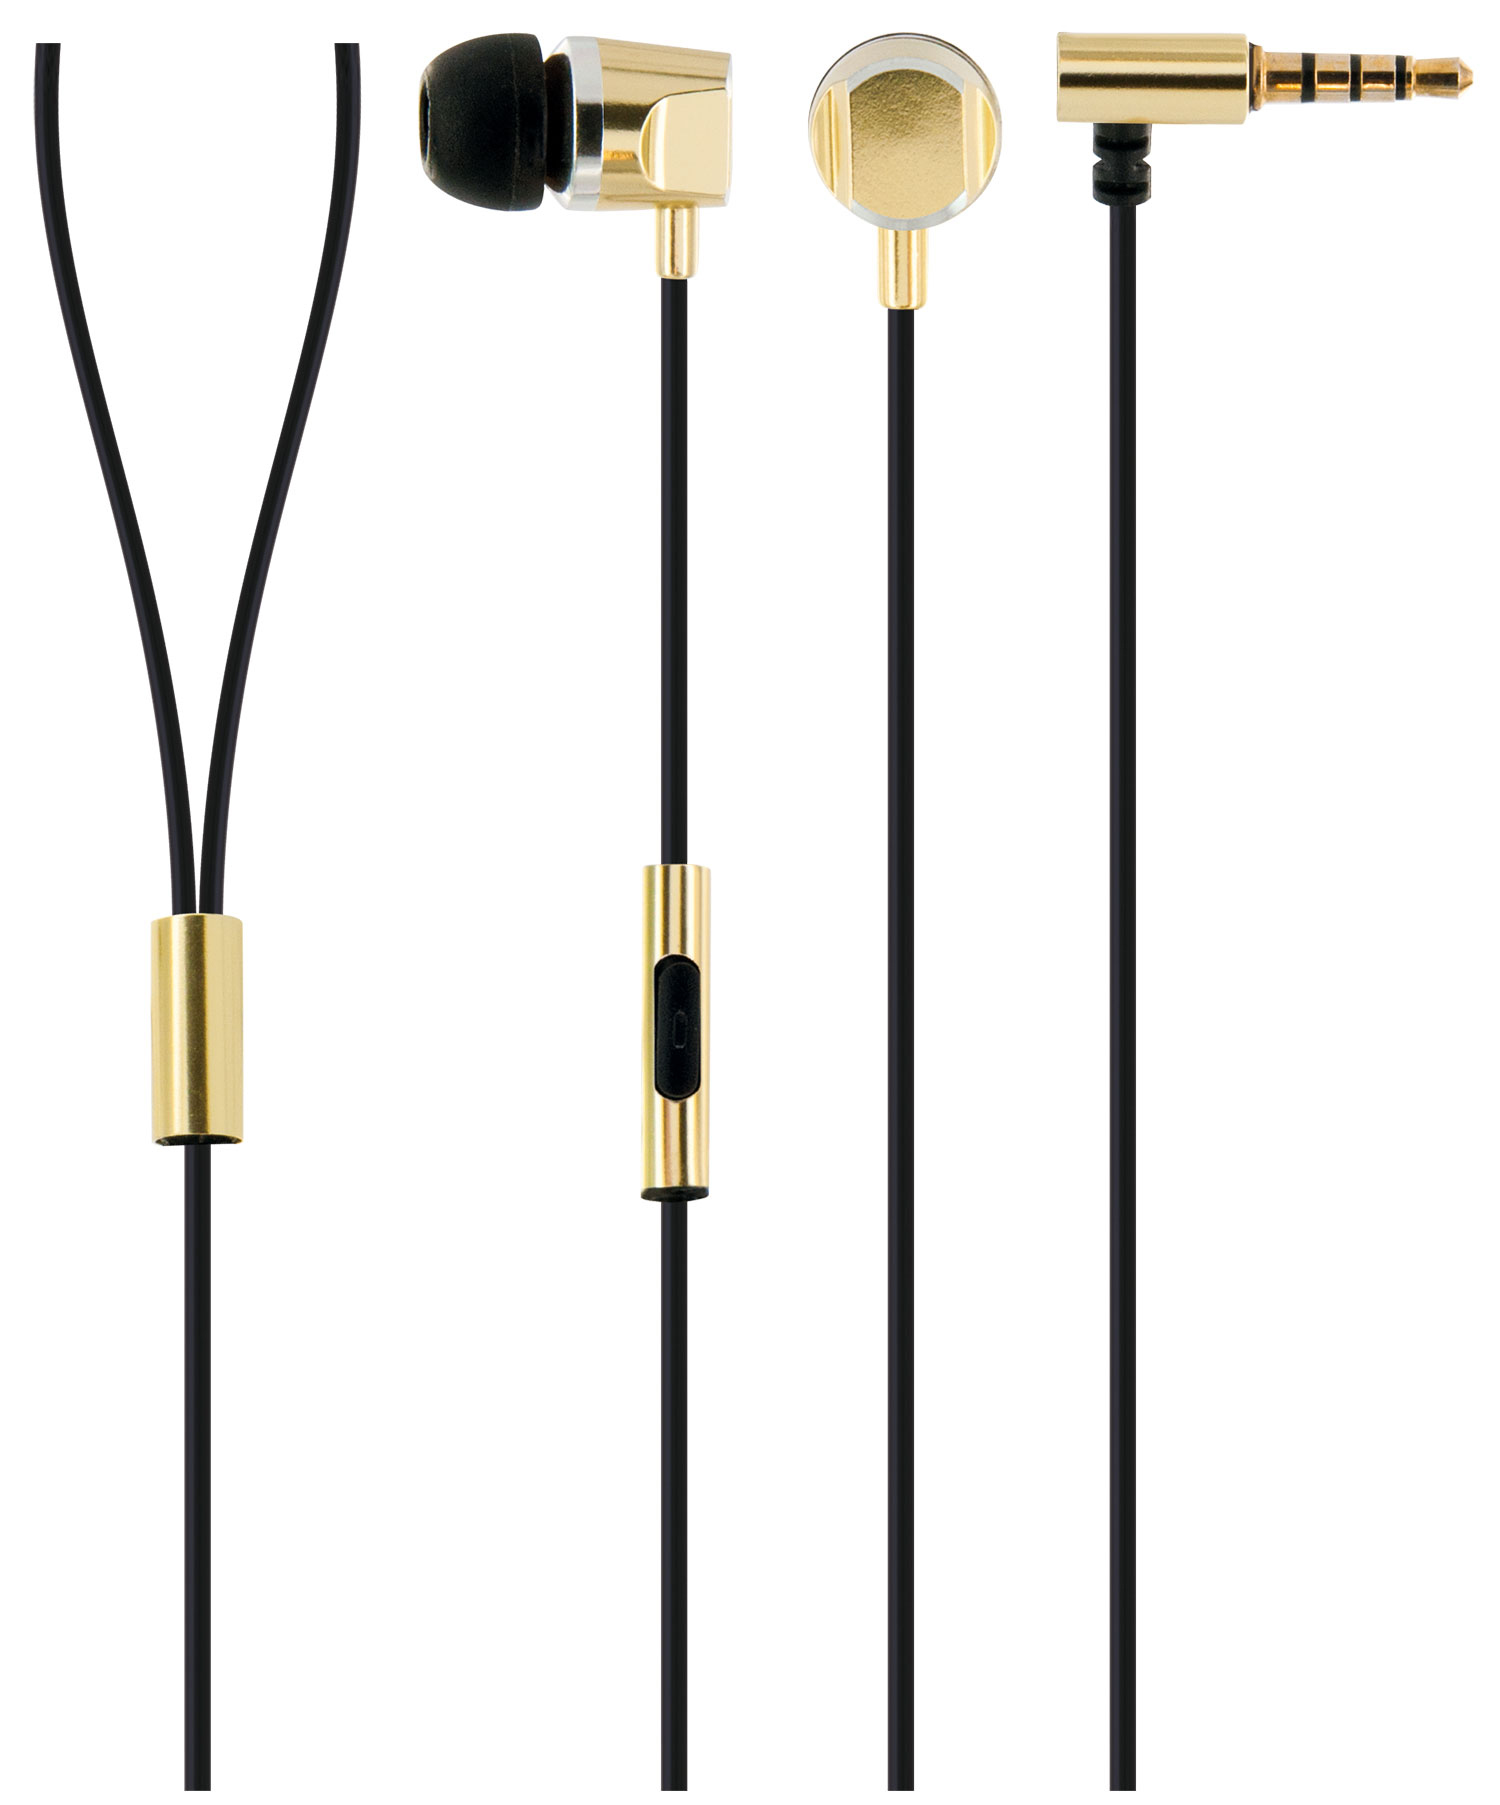 SCHWAIGER -KH410G Slimkabel Kopfhörer Metallgehäuse 531-, und mit In-ear Gold